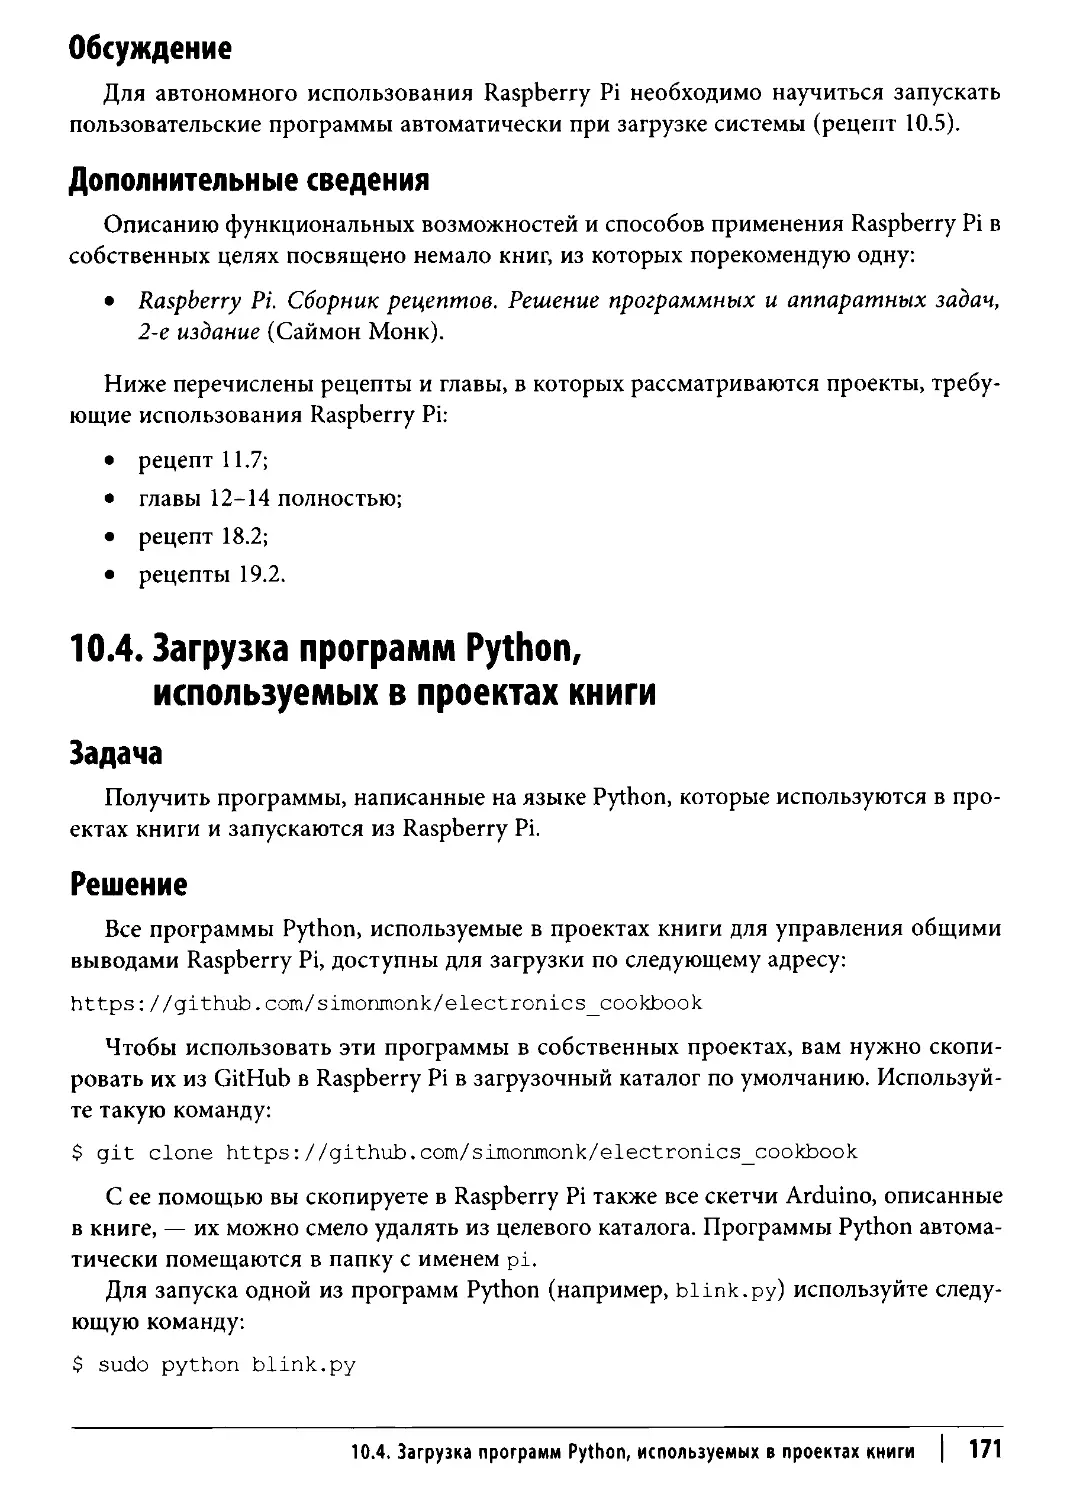 ﻿10.4. Загрузка программ Python, используемых в проектах книг